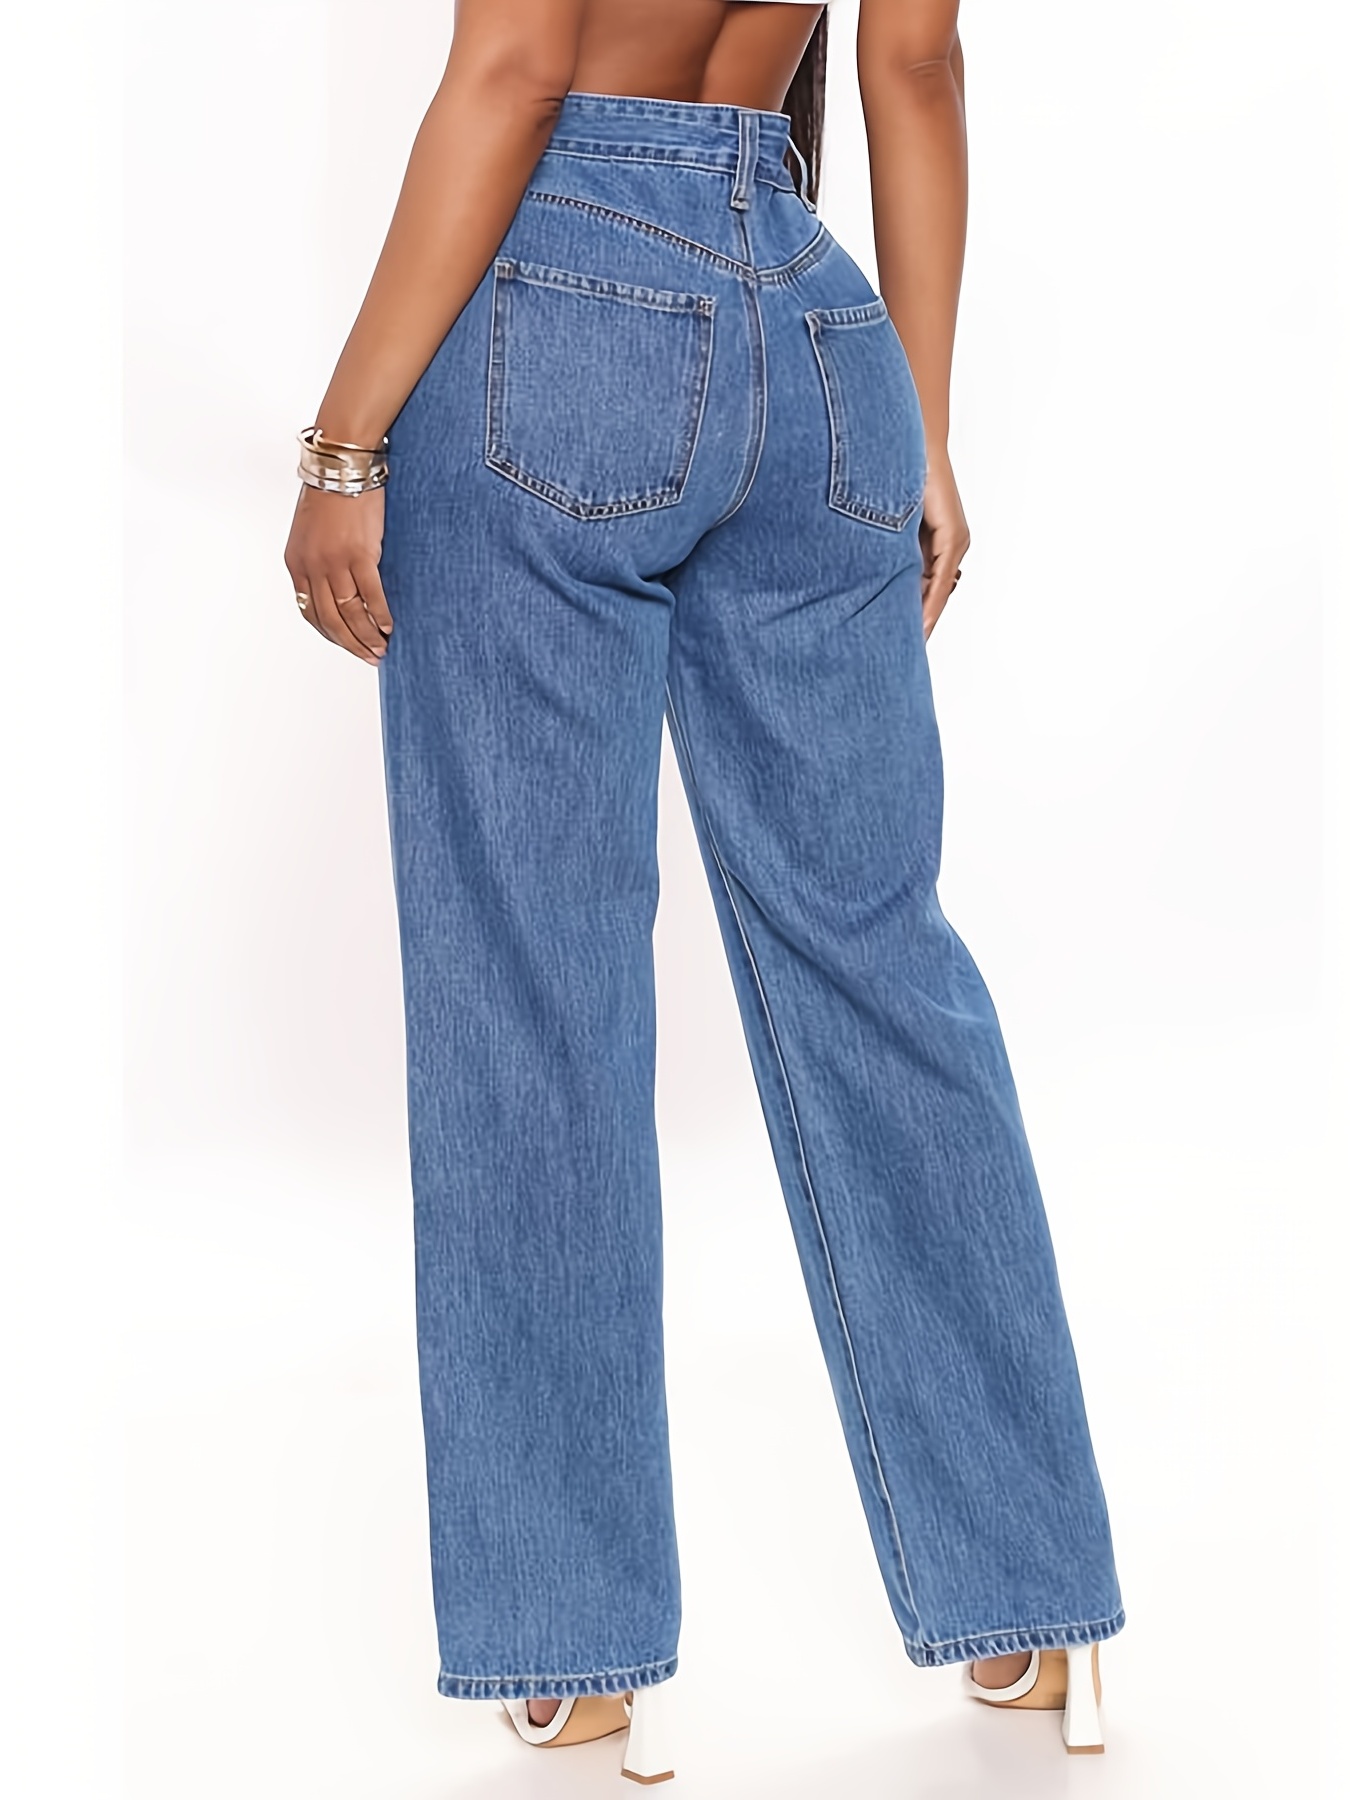 Jeans rectos de cintura alta con estampado floral, pantalones de mezclilla  holgados de tiro alto con bolsillos oblicuos, jeans y ropa de mujer